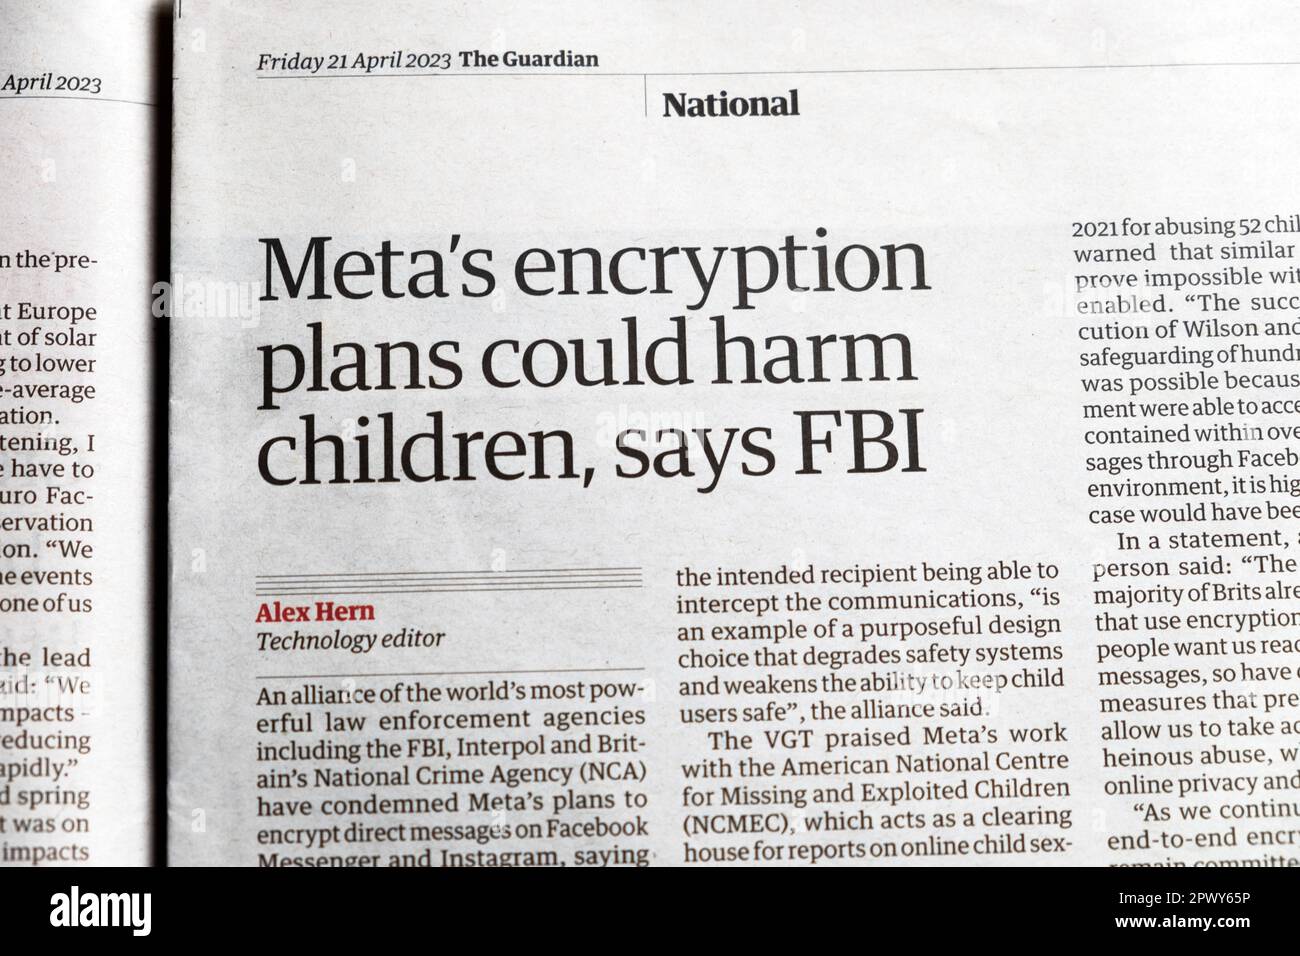 "I piani di crittografia di meta potrebbero danneggiare i bambini", afferma l'articolo sulla tecnologia del quotidiano Guardian dell'FBI 21st aprile 2023 Londra UK Foto Stock